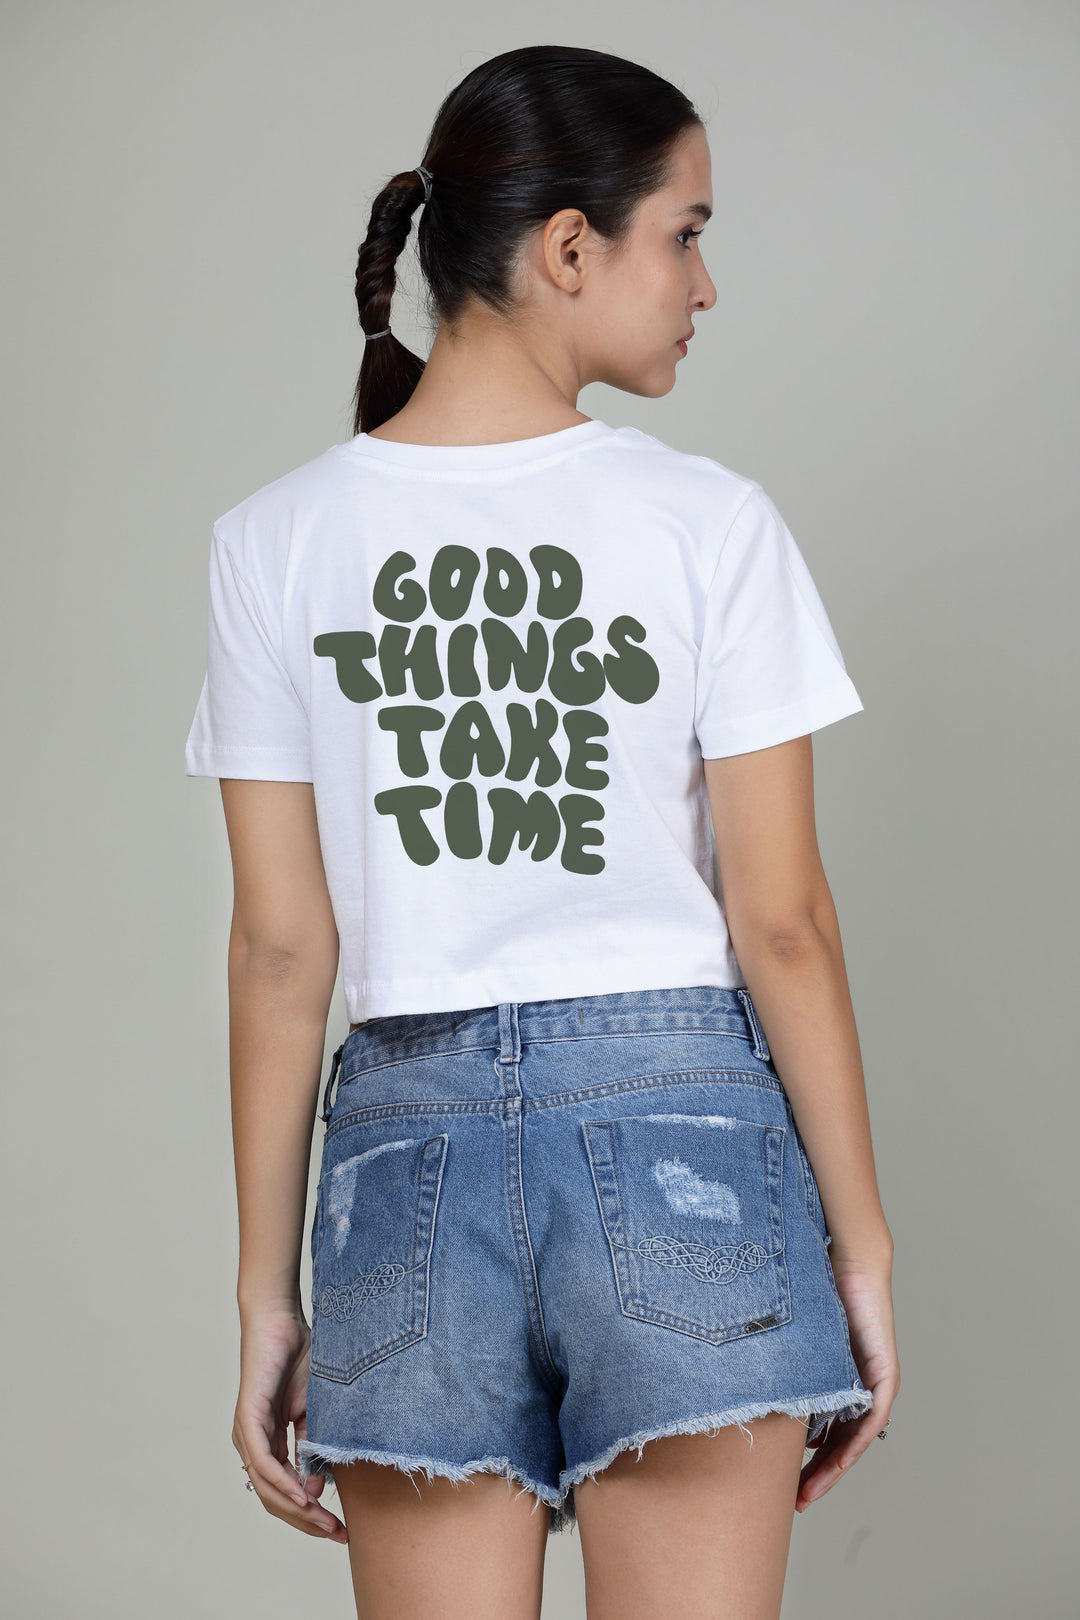 Gud things takes time- Printed Crop Top